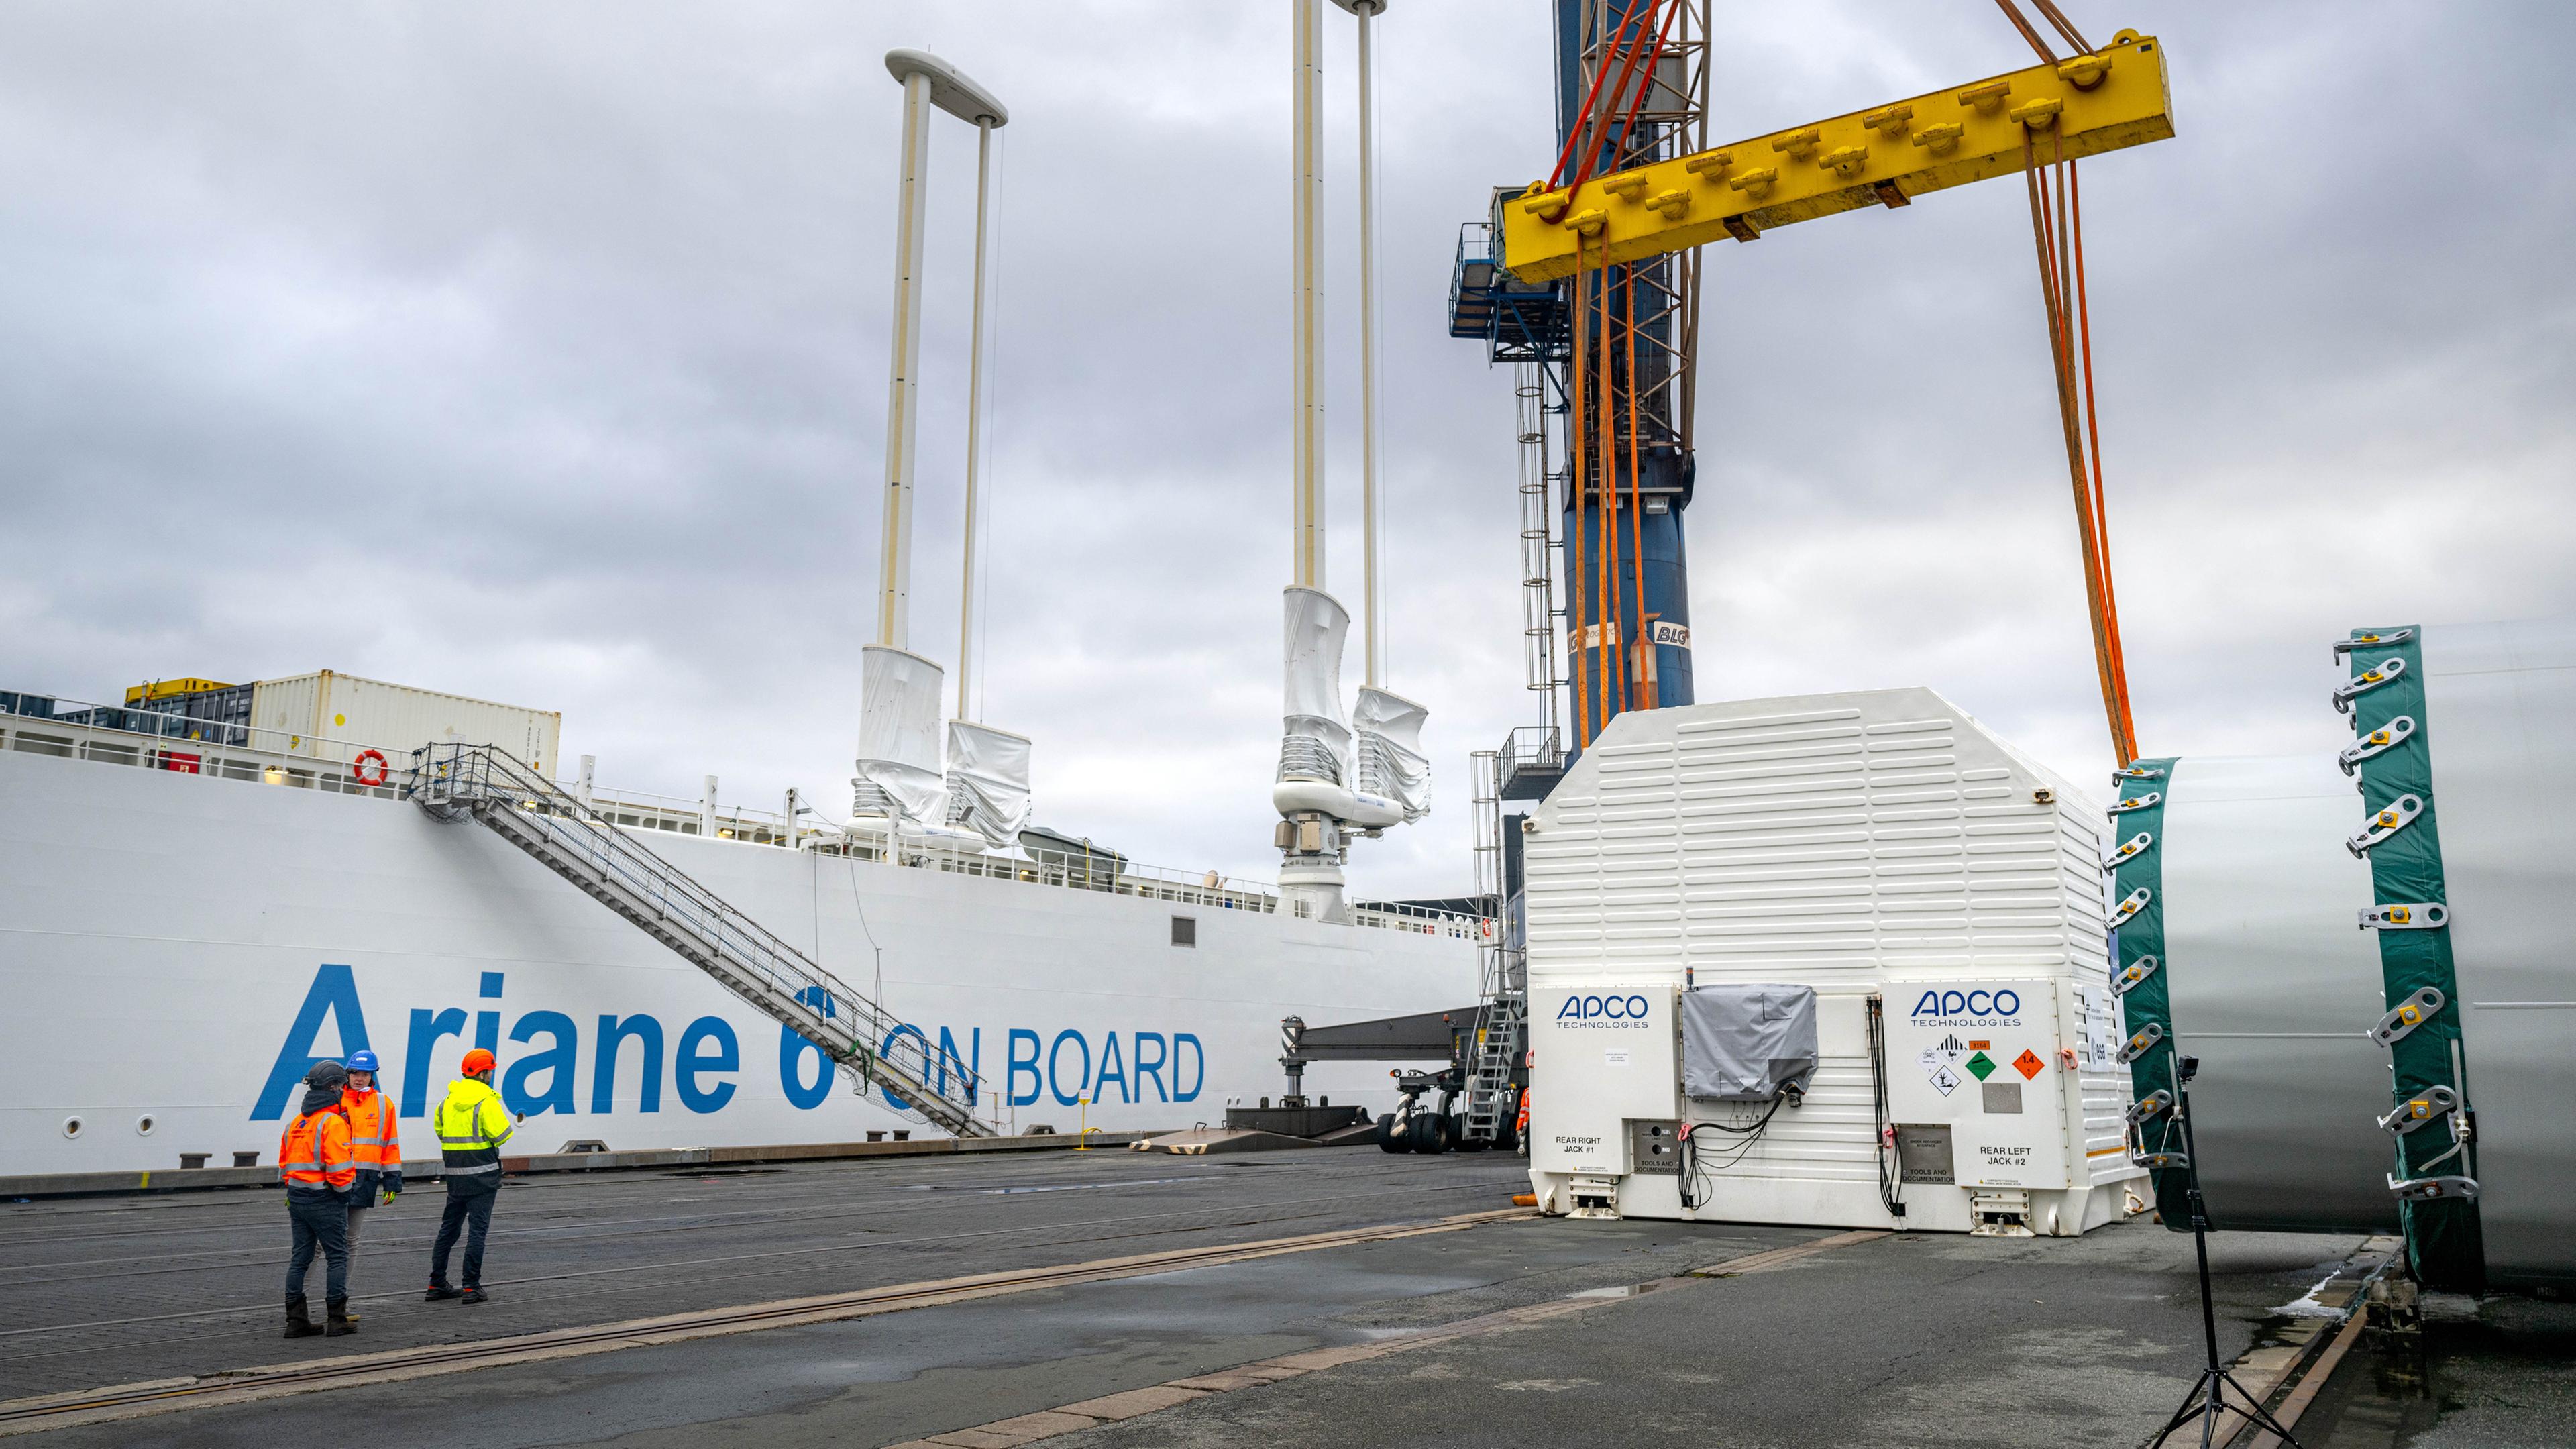 Ein Container mit der ersten Oberstufe der europäischen Trägerrakete Ariane 6 wird im Neustädter Hafen für das Verladen auf das speziell für den Transport der Rakete konzipierte Schiff "Canopee" vorbereitet.